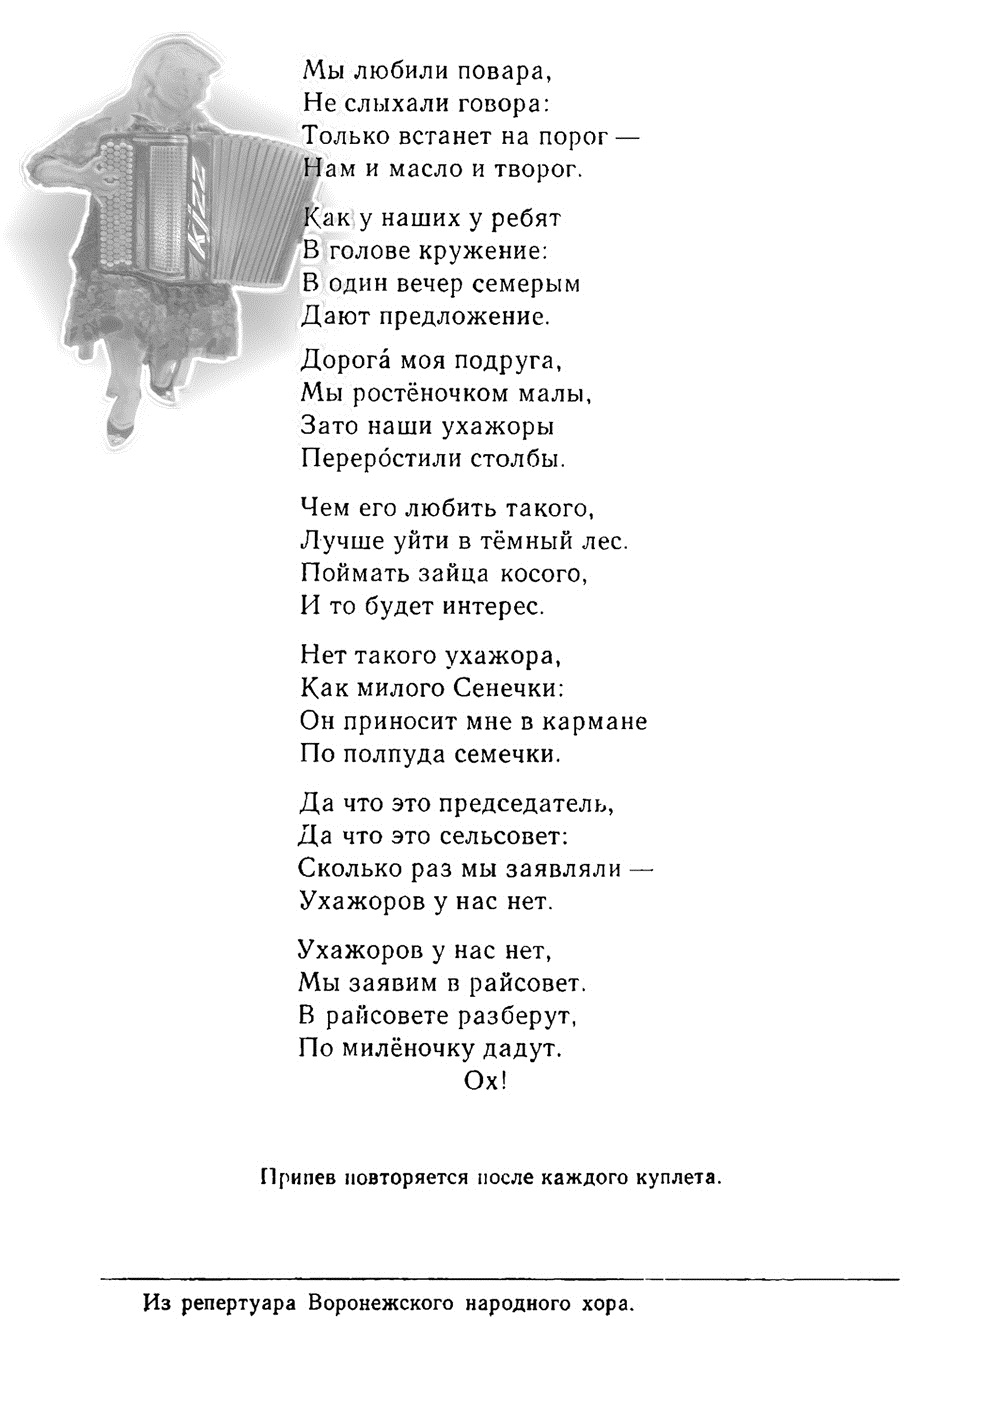 Воронежские хороводные частушки. Ноты, стр. 03